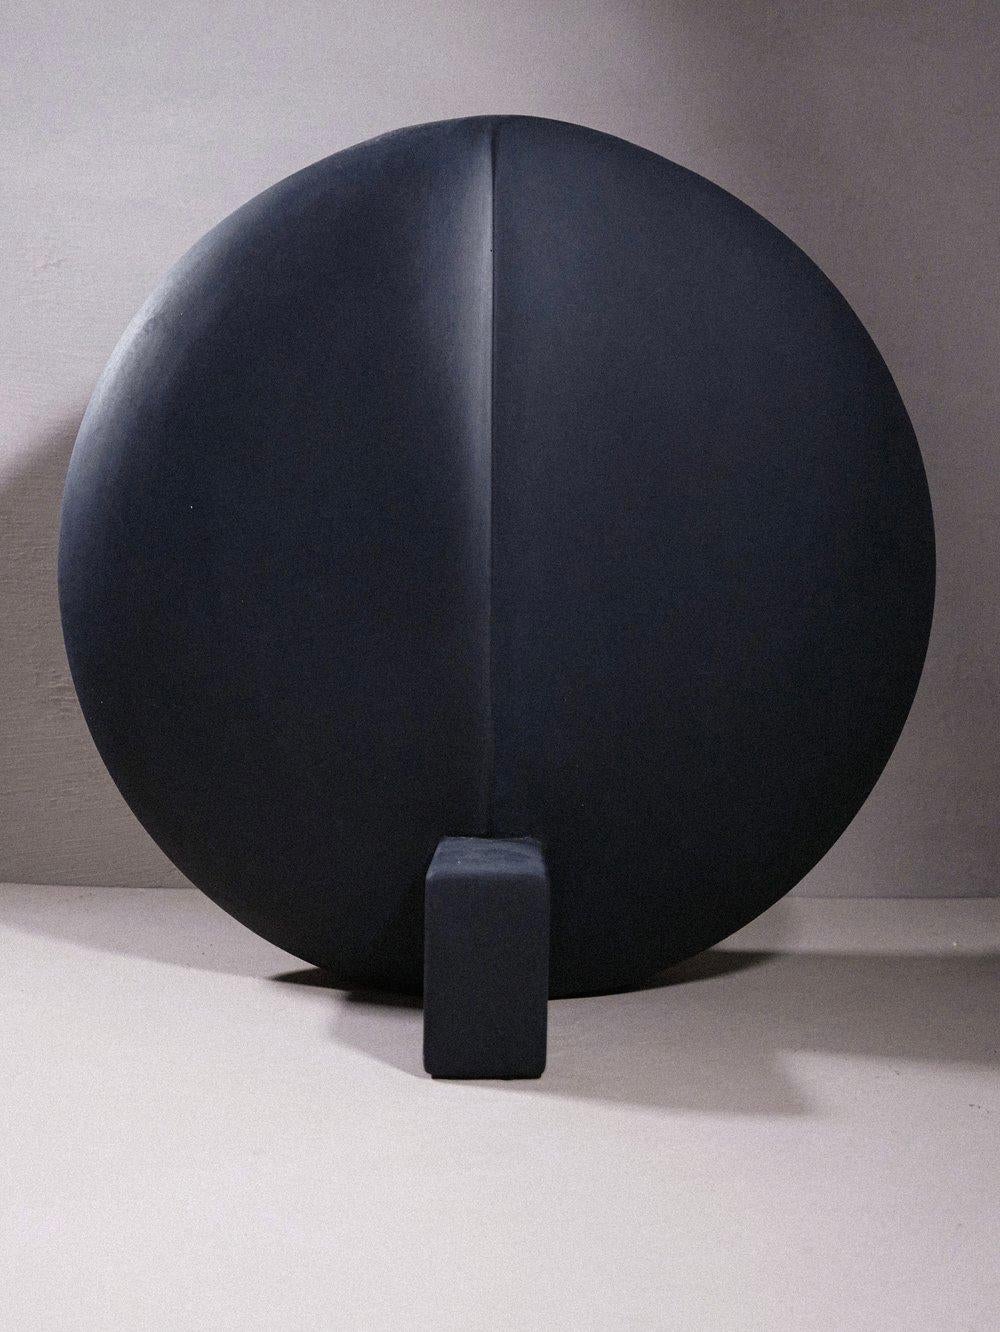 Le vase Guggenheim est un magnifique vase architectural noir conçu par 101 Copenhagen et fini à la main au Danemark.

En raison de la surface mate finie à la main, ce vase ne peut pas contenir d'eau. Il est livré avec un sac en plastique dans lequel